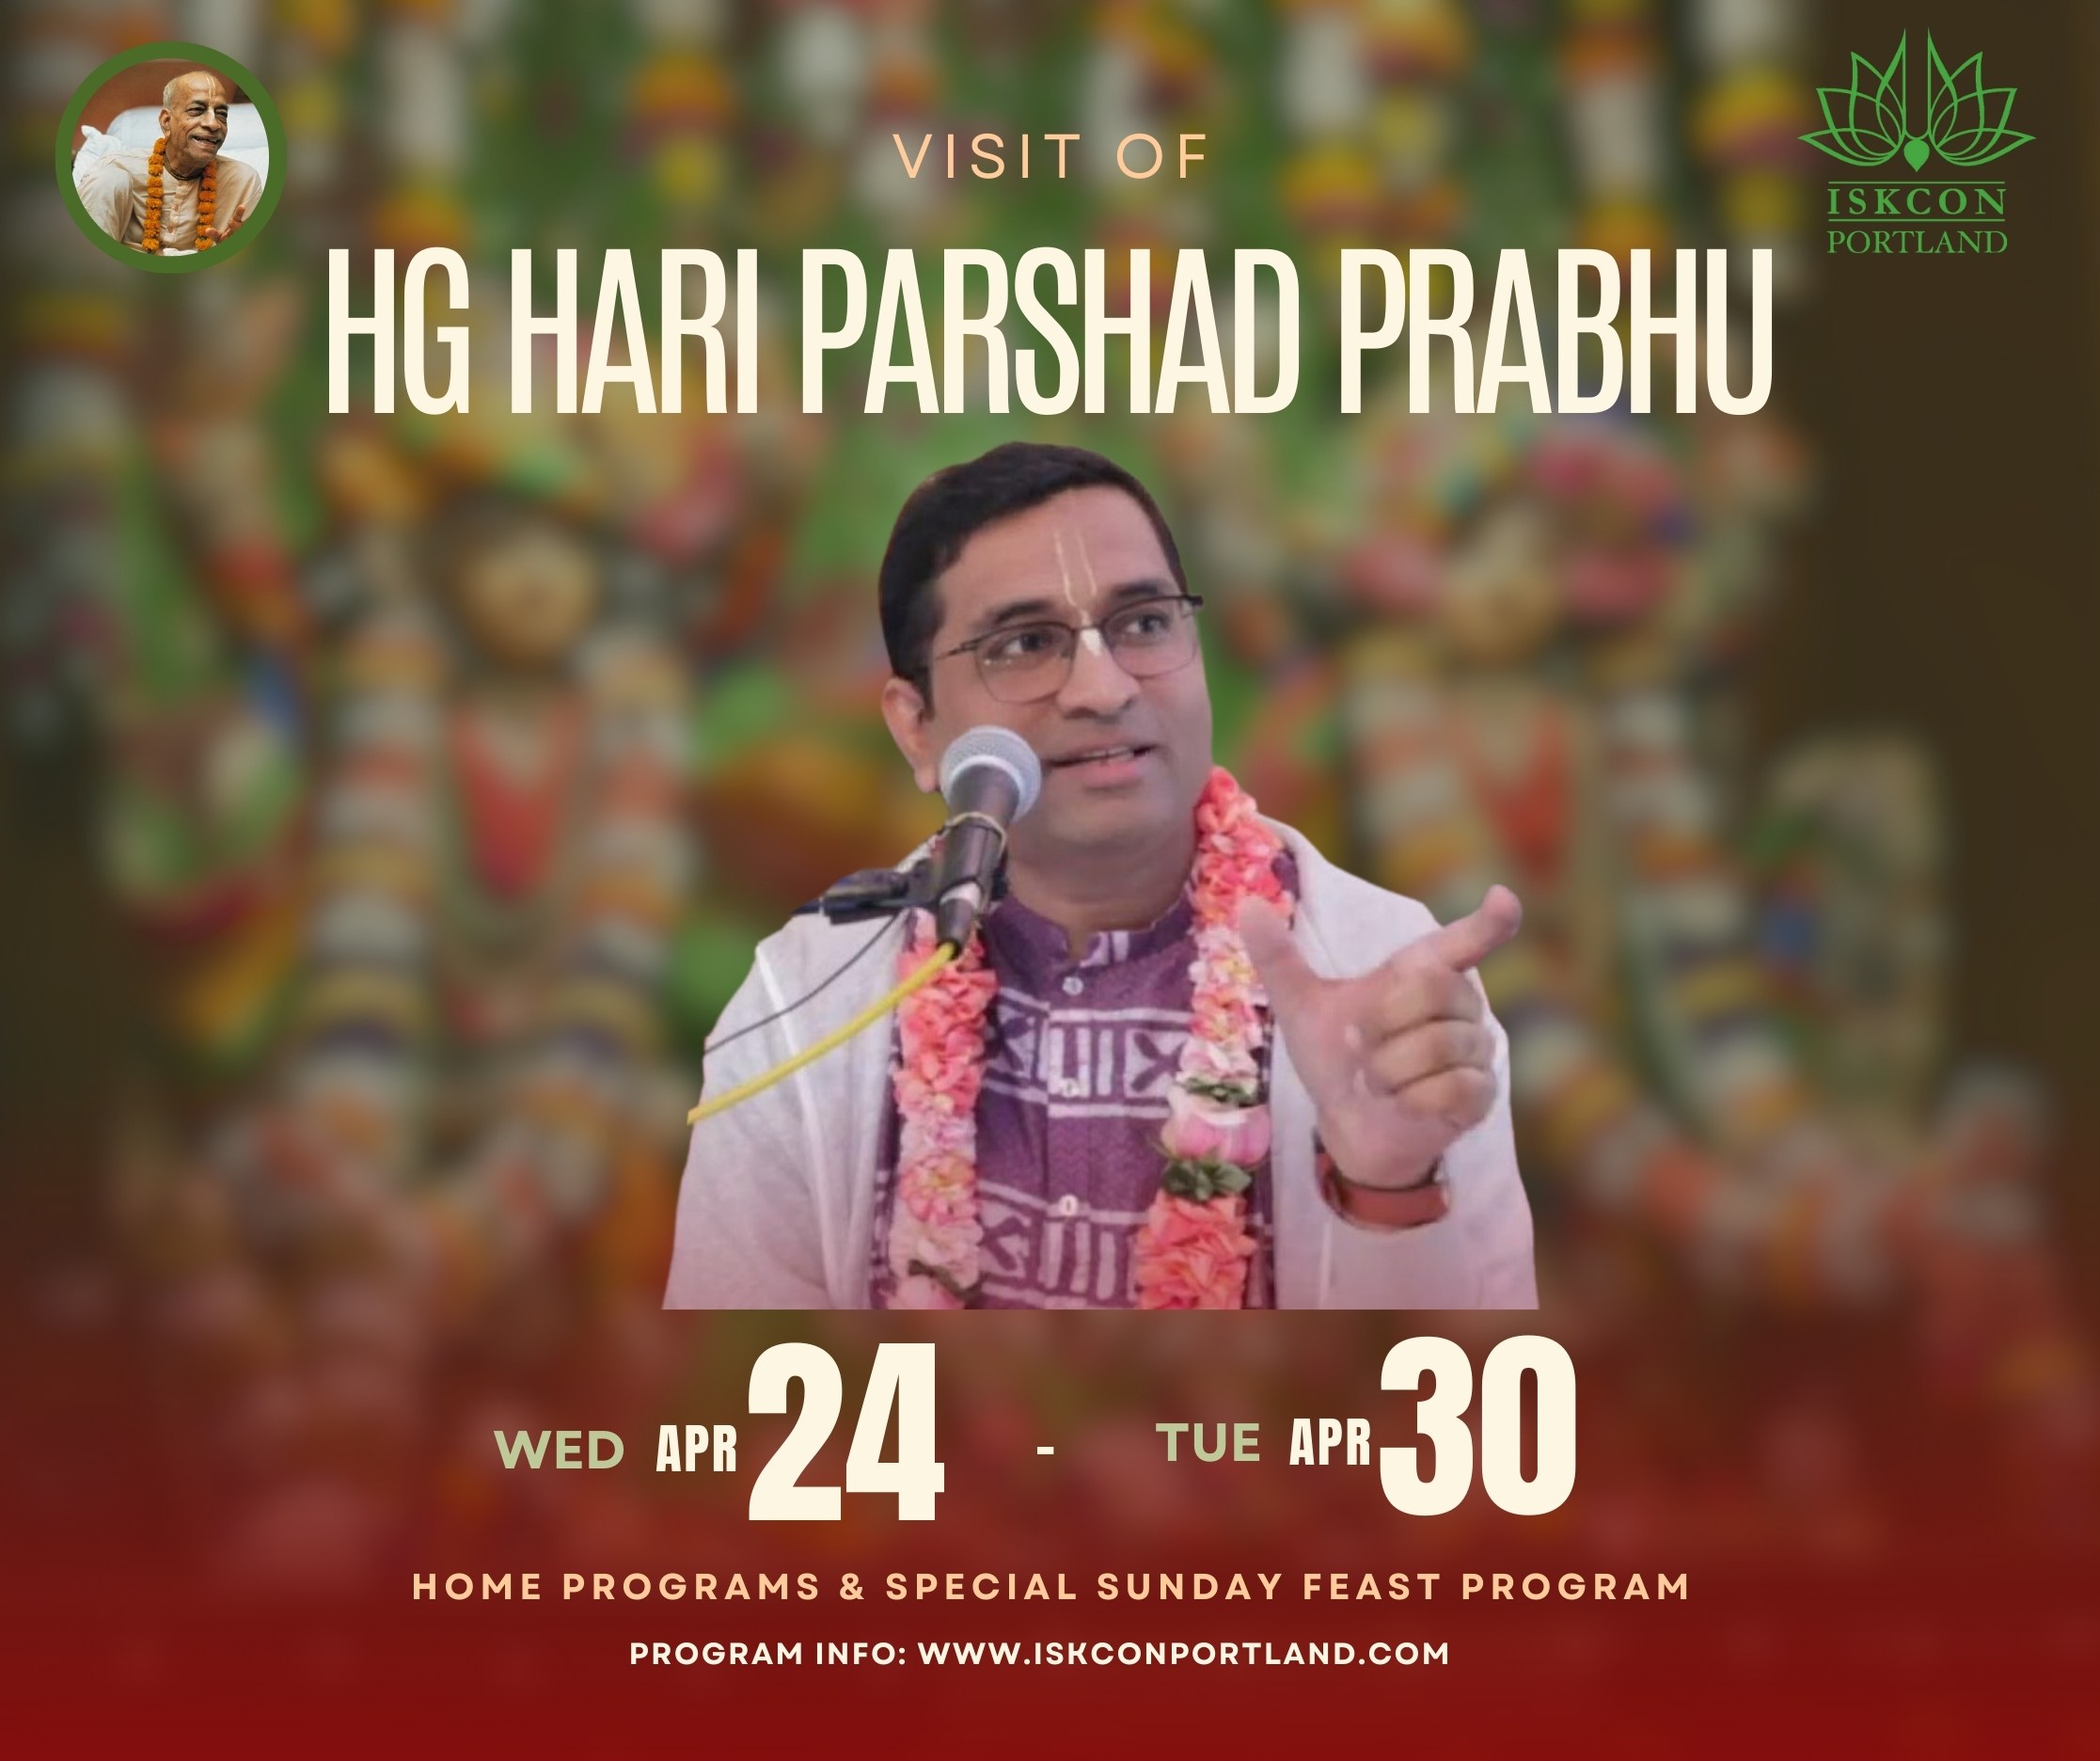 HG Hari Parshad prabhu visit